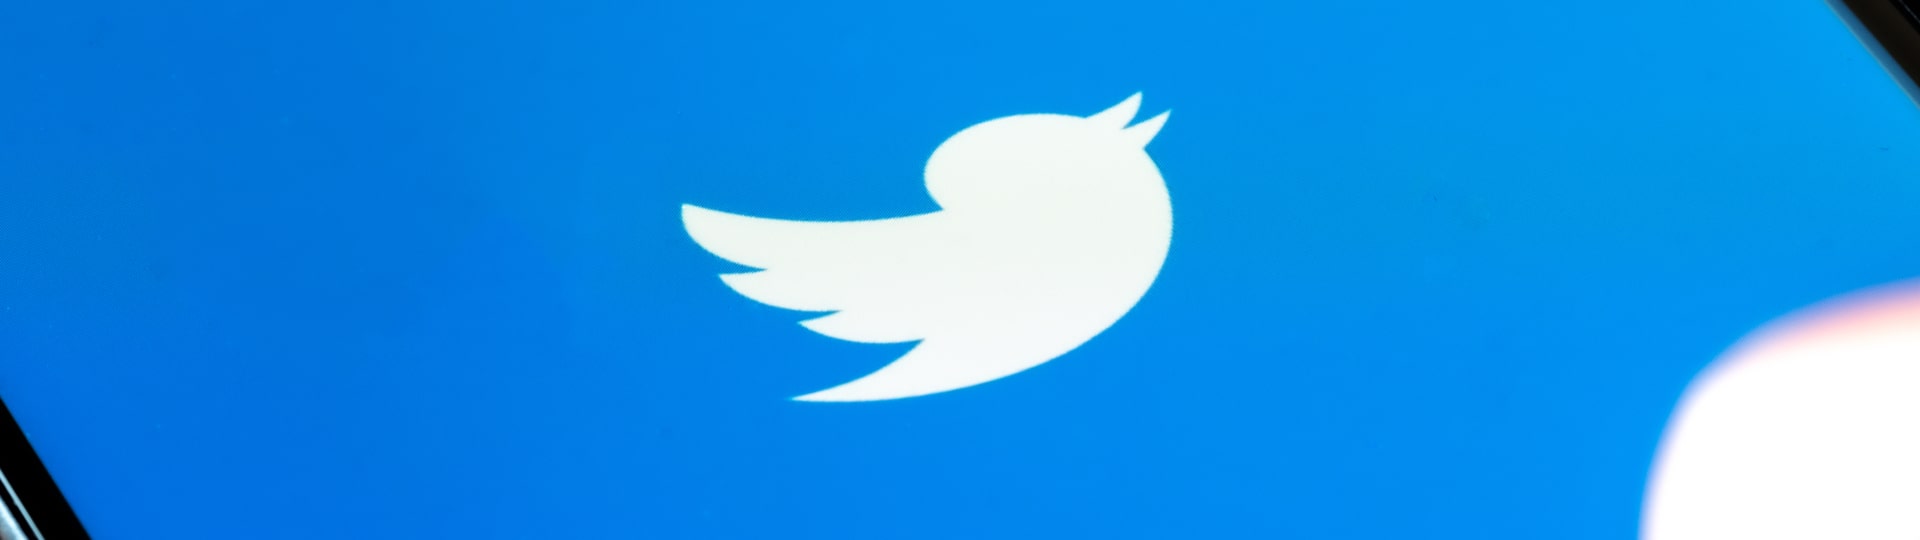 Generální ředitel Twitteru Jack Dorsey podle zdrojů odstoupí z funkce